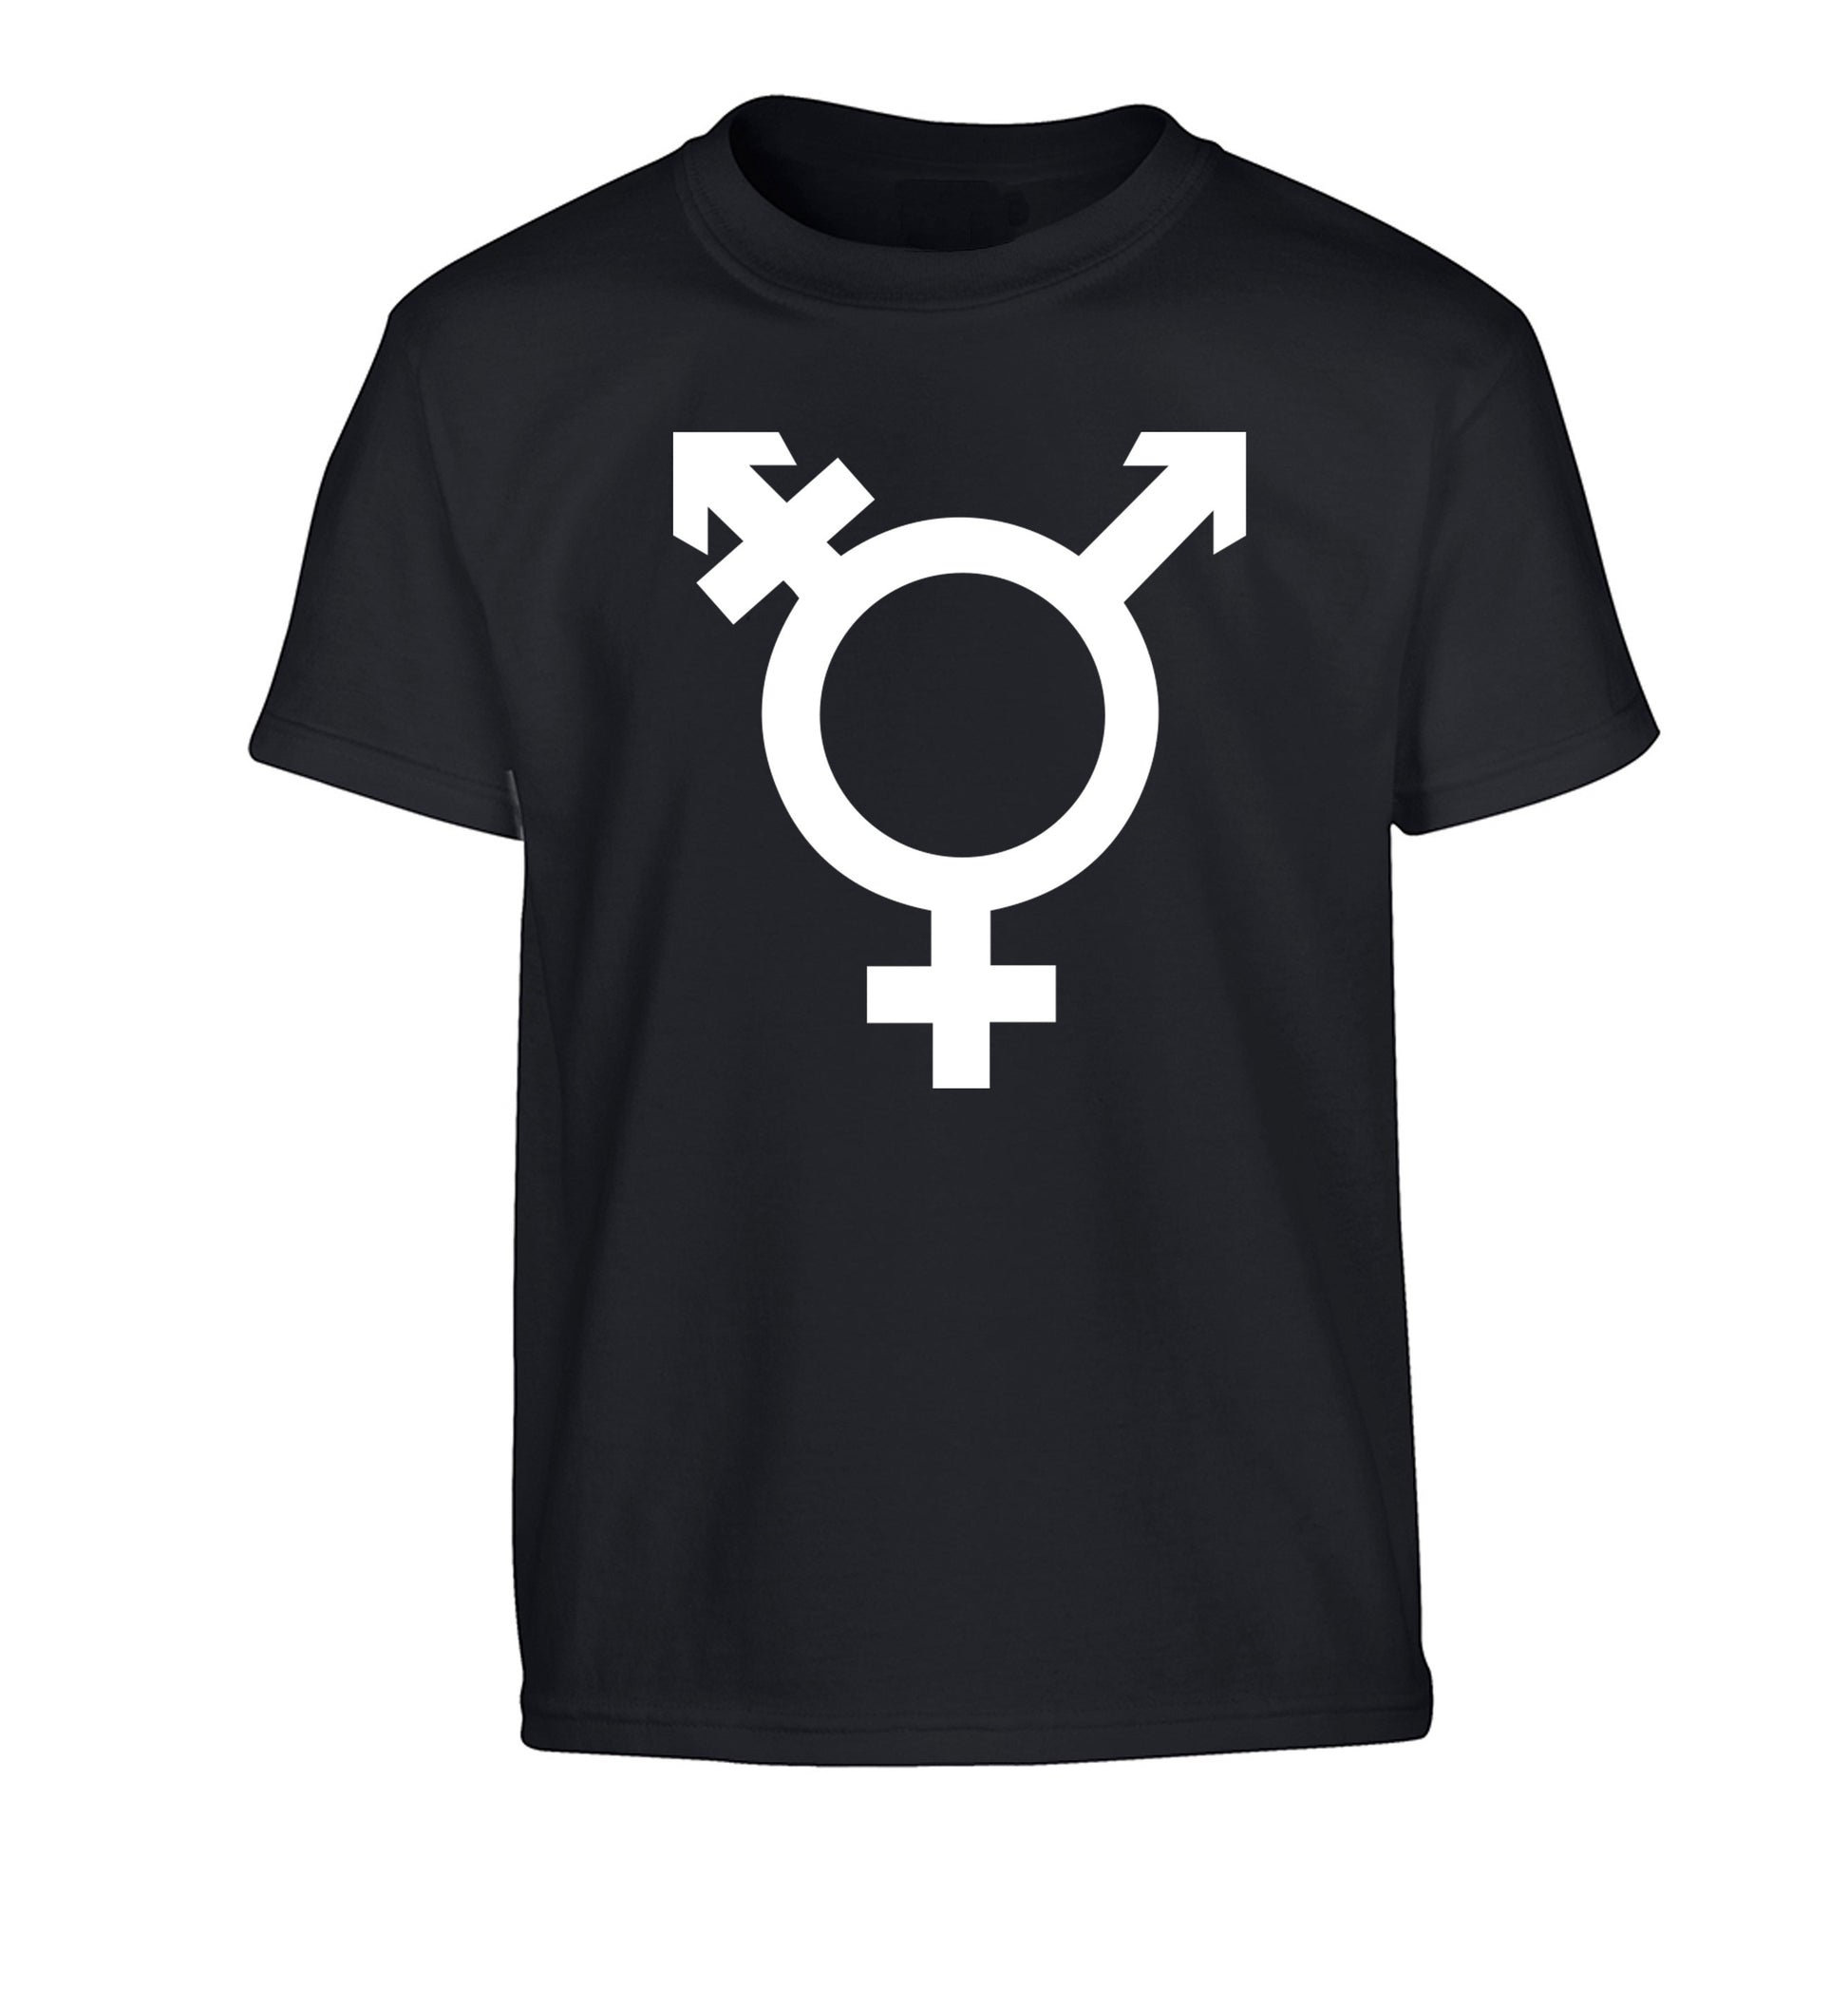 Gender neutral symbol large Children's black Tshirt 12-14 Years